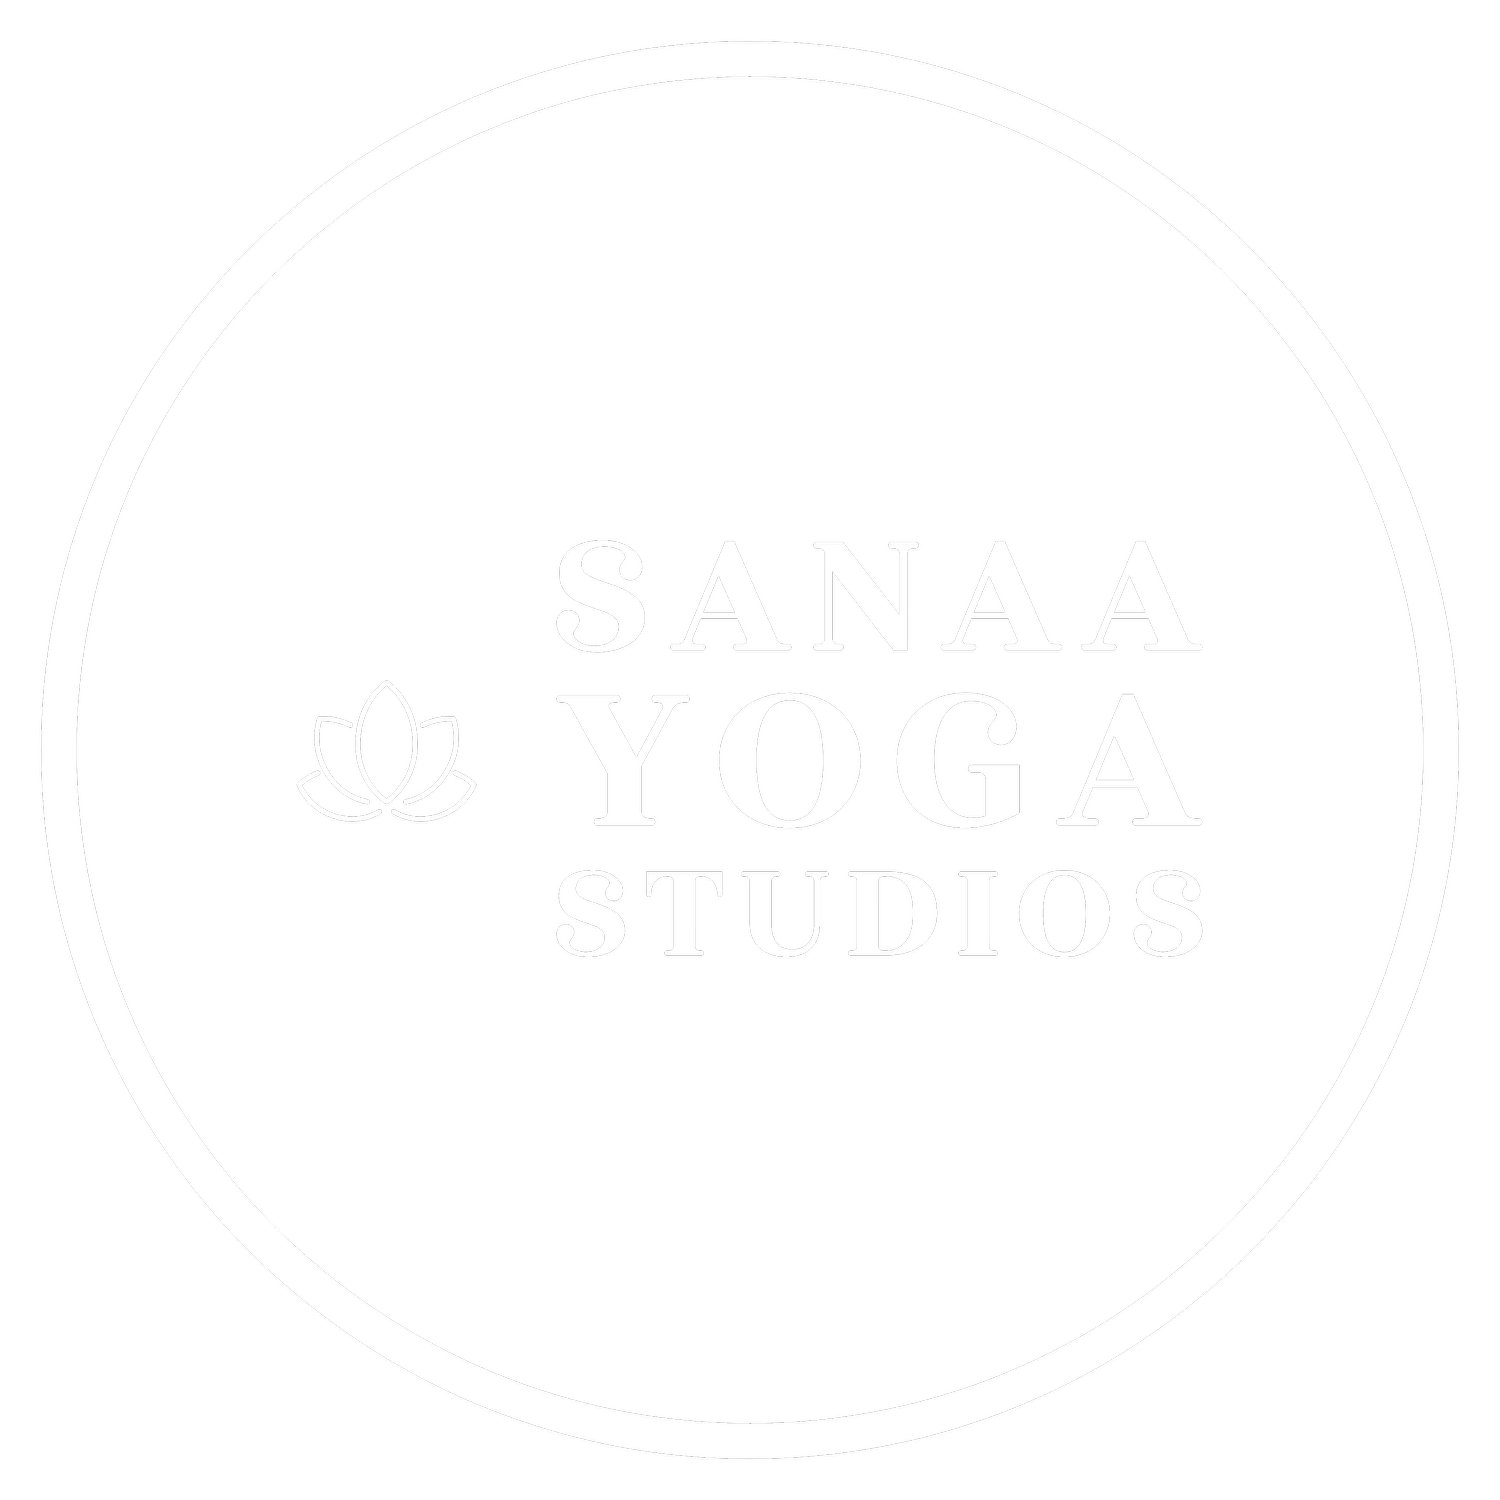 Sanaa Yoga Studios